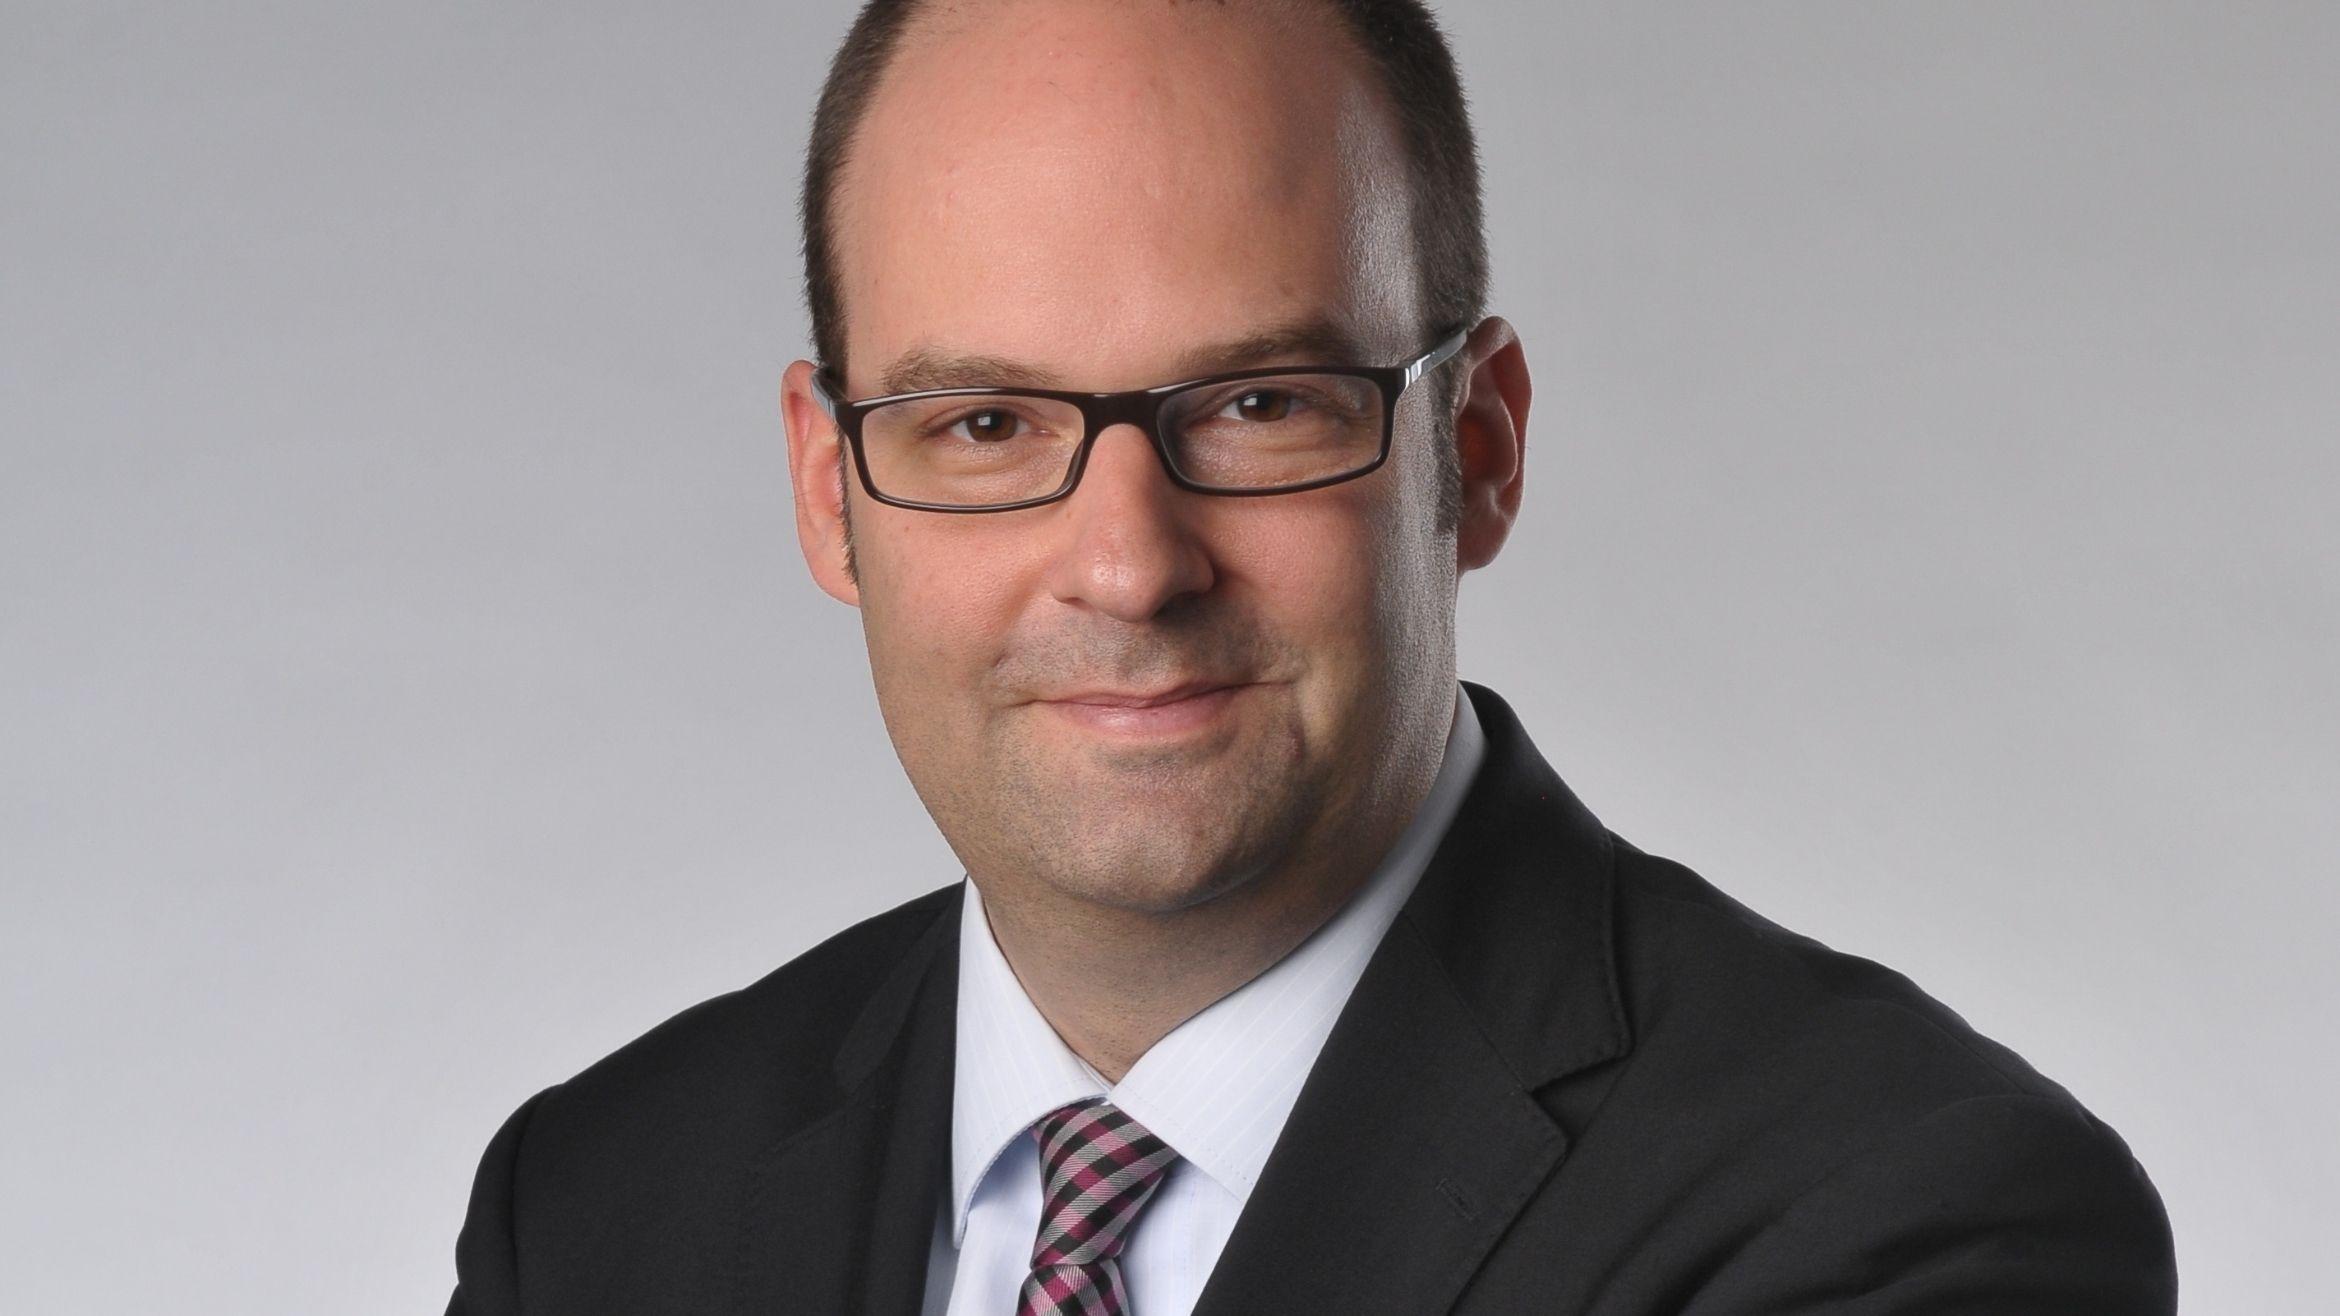 Michael Preuss, Head of Communications von Bayer, wünscht sich mehr Sachlichkeit in der Berichterstattung über seinen Konzern –